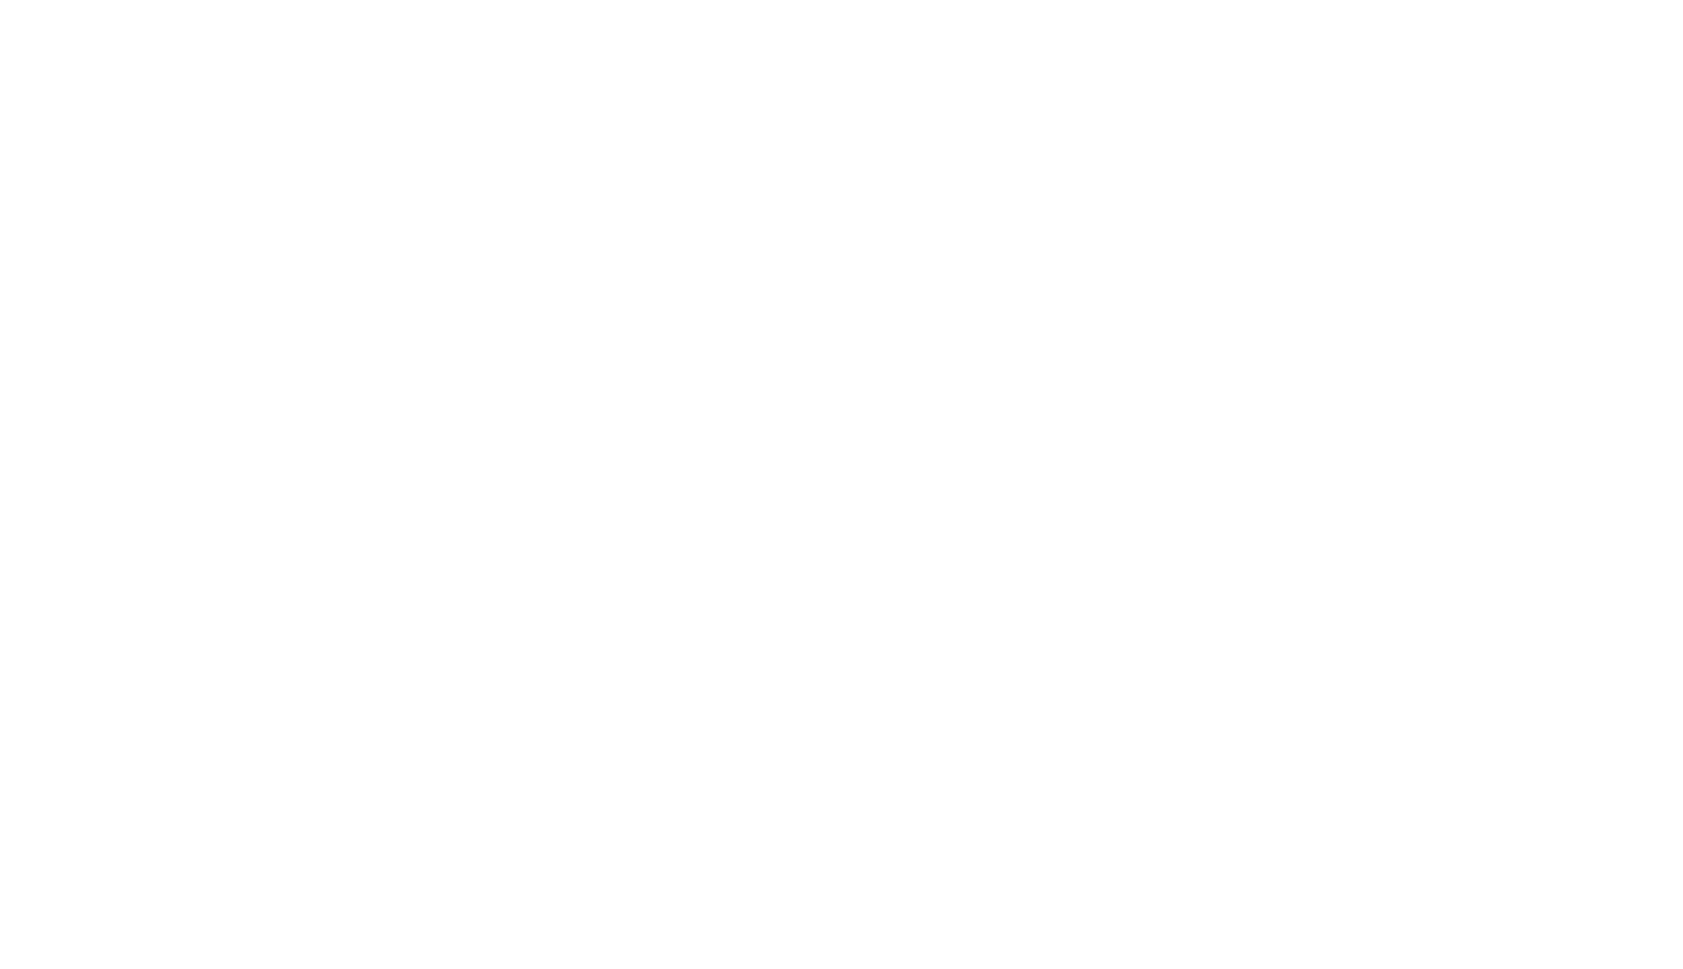 Phong's Restaurant